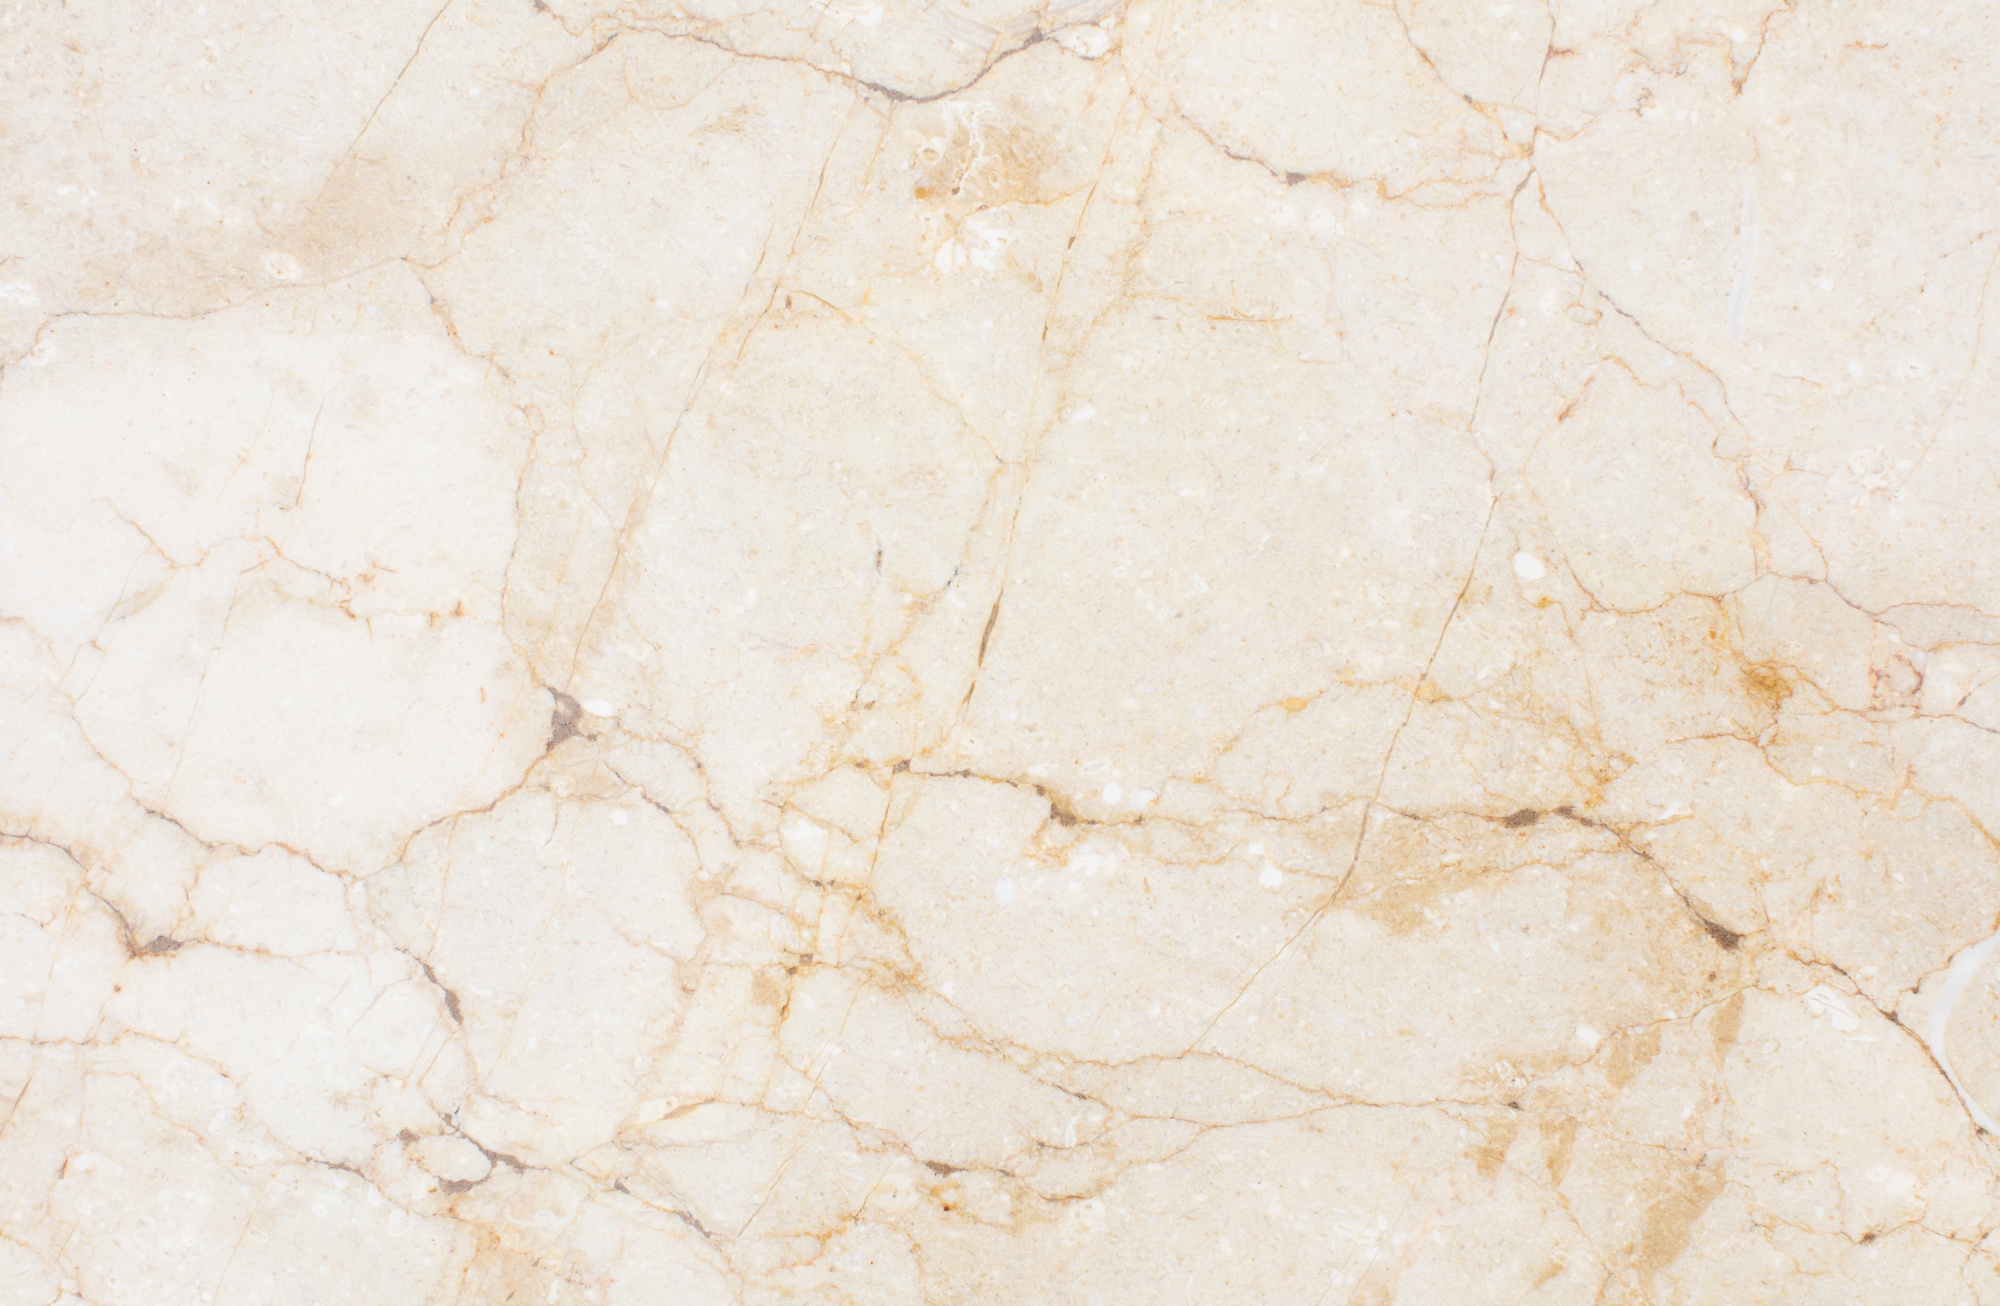 stone floor texture 1194 9047